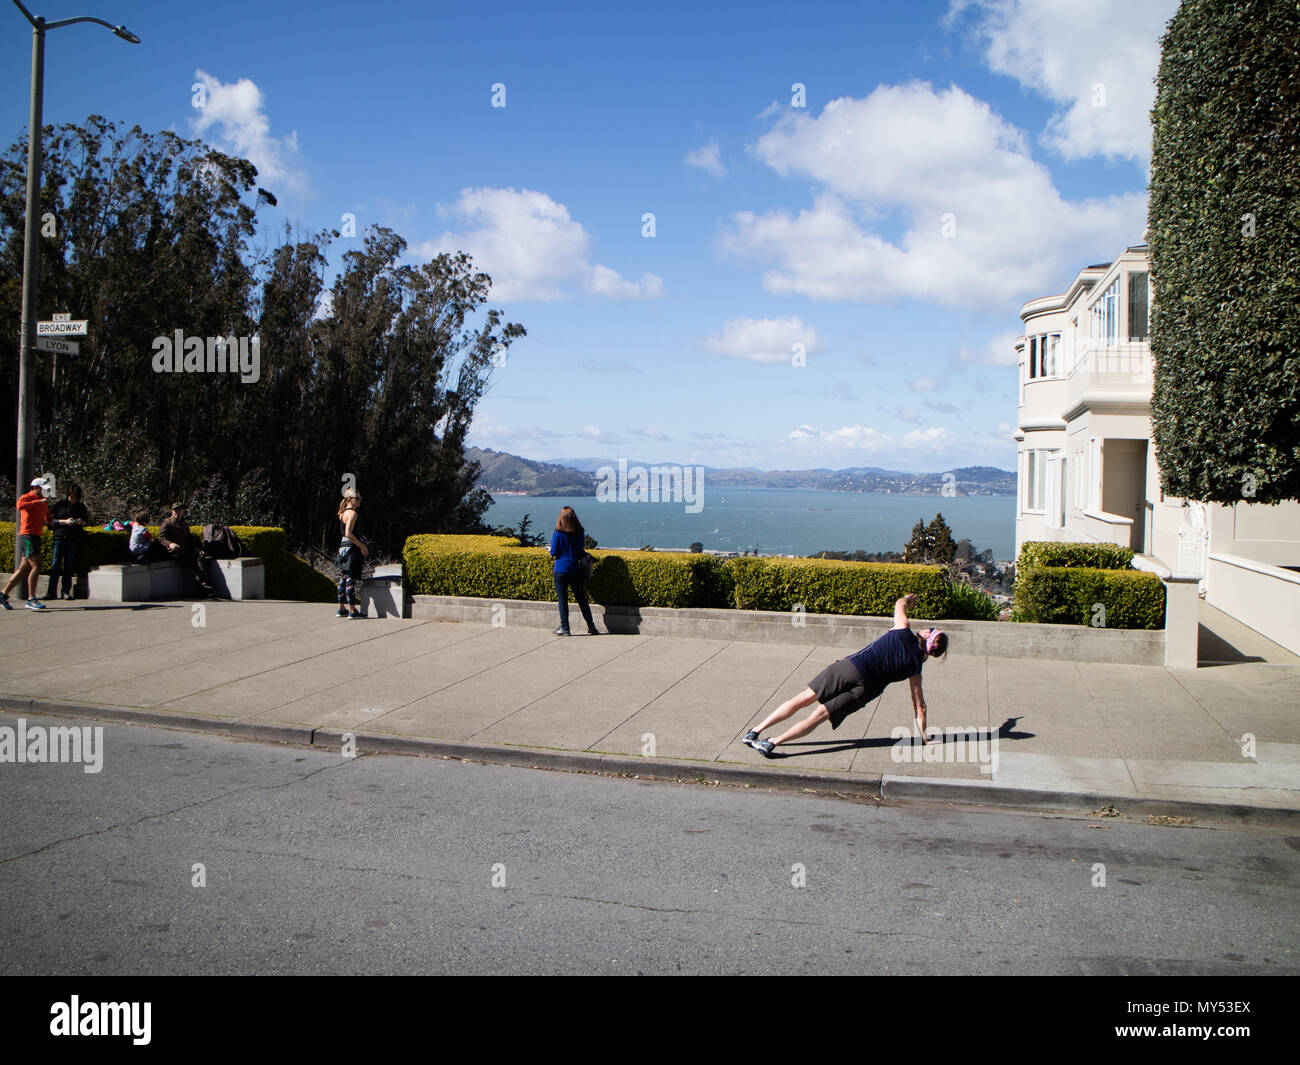 Une personne faisant un autre appuyez sur Haut sur le trottoir sur un dimanche après-midi ensoleillé à San Francisco avec une vue sur la baie à l'arrière-plan Banque D'Images